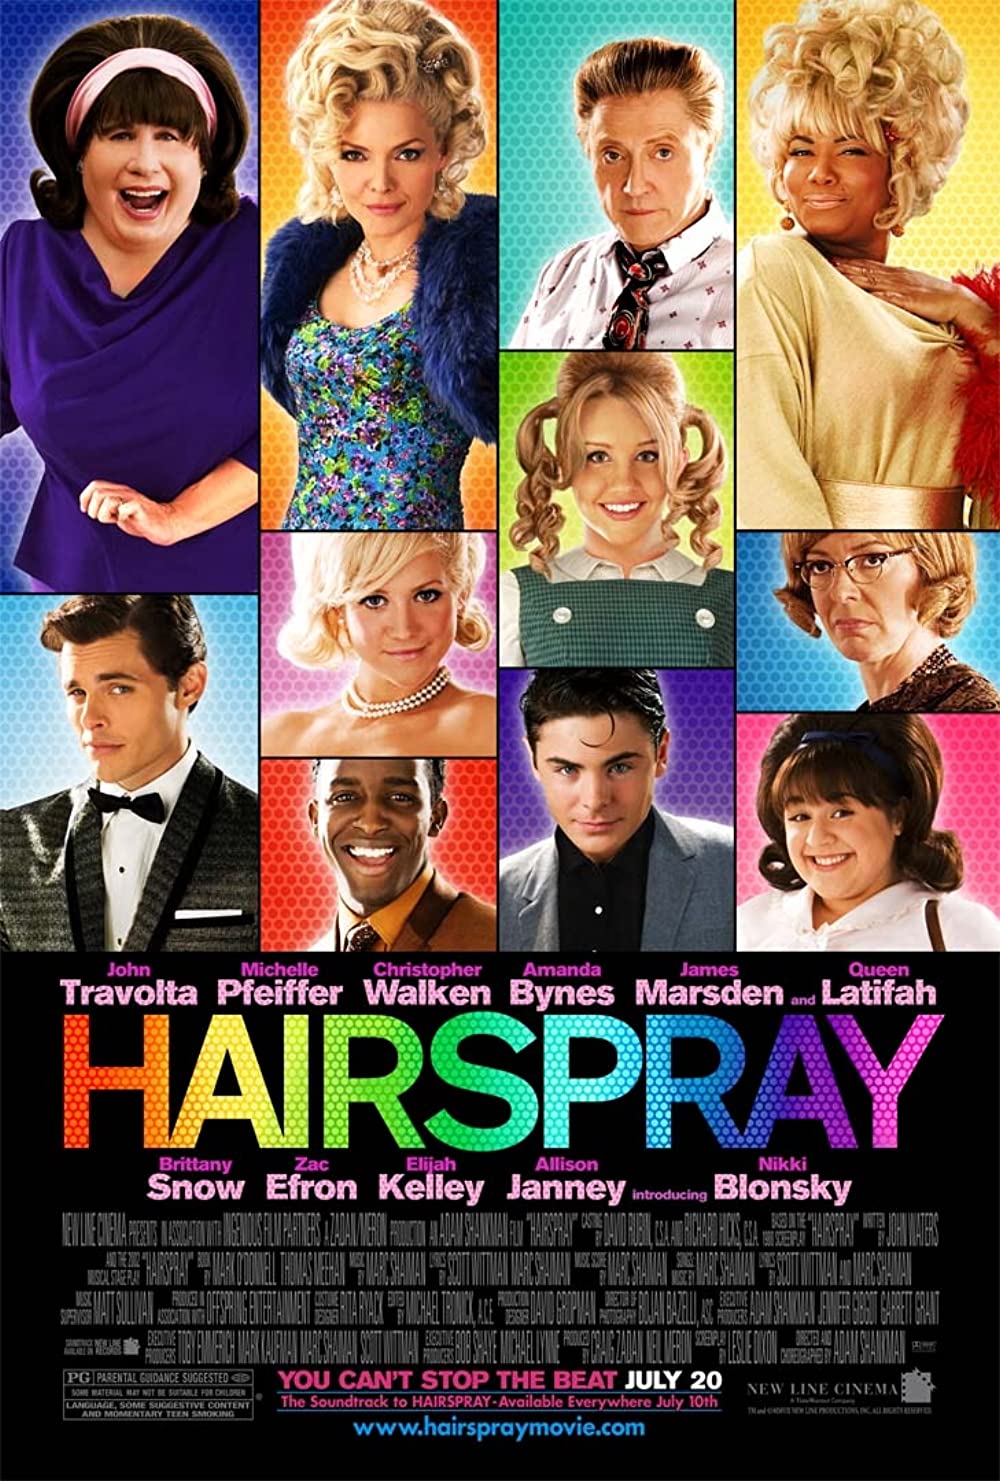 Filmbeschreibung zu Hairspray (OV)